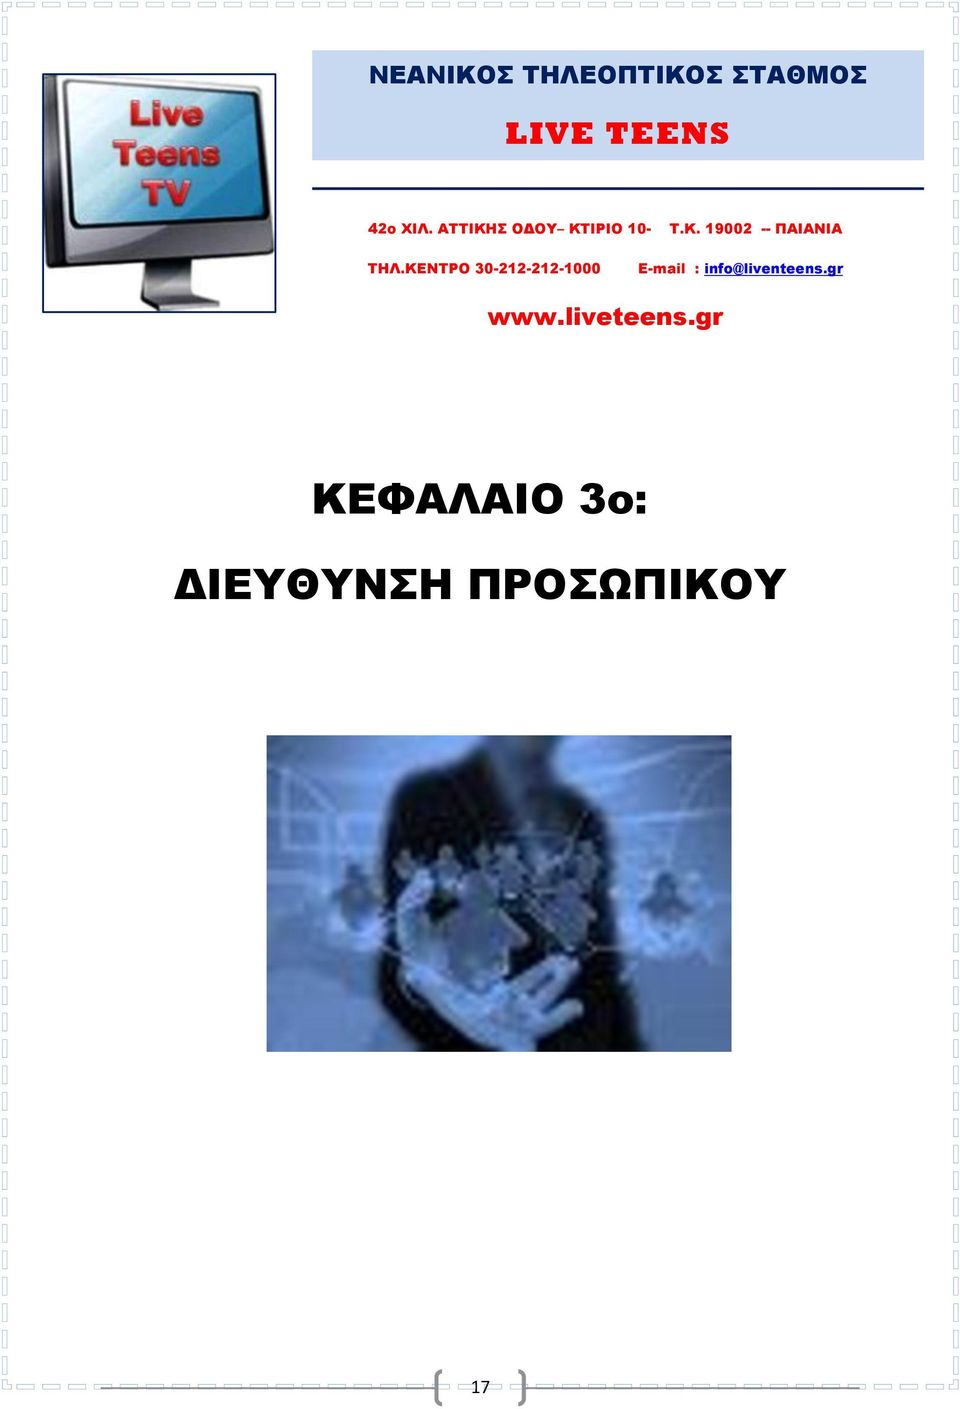 ΚΕΝΤΡΟ 30-212-212-1000 Ε-mail : info@liventeens.